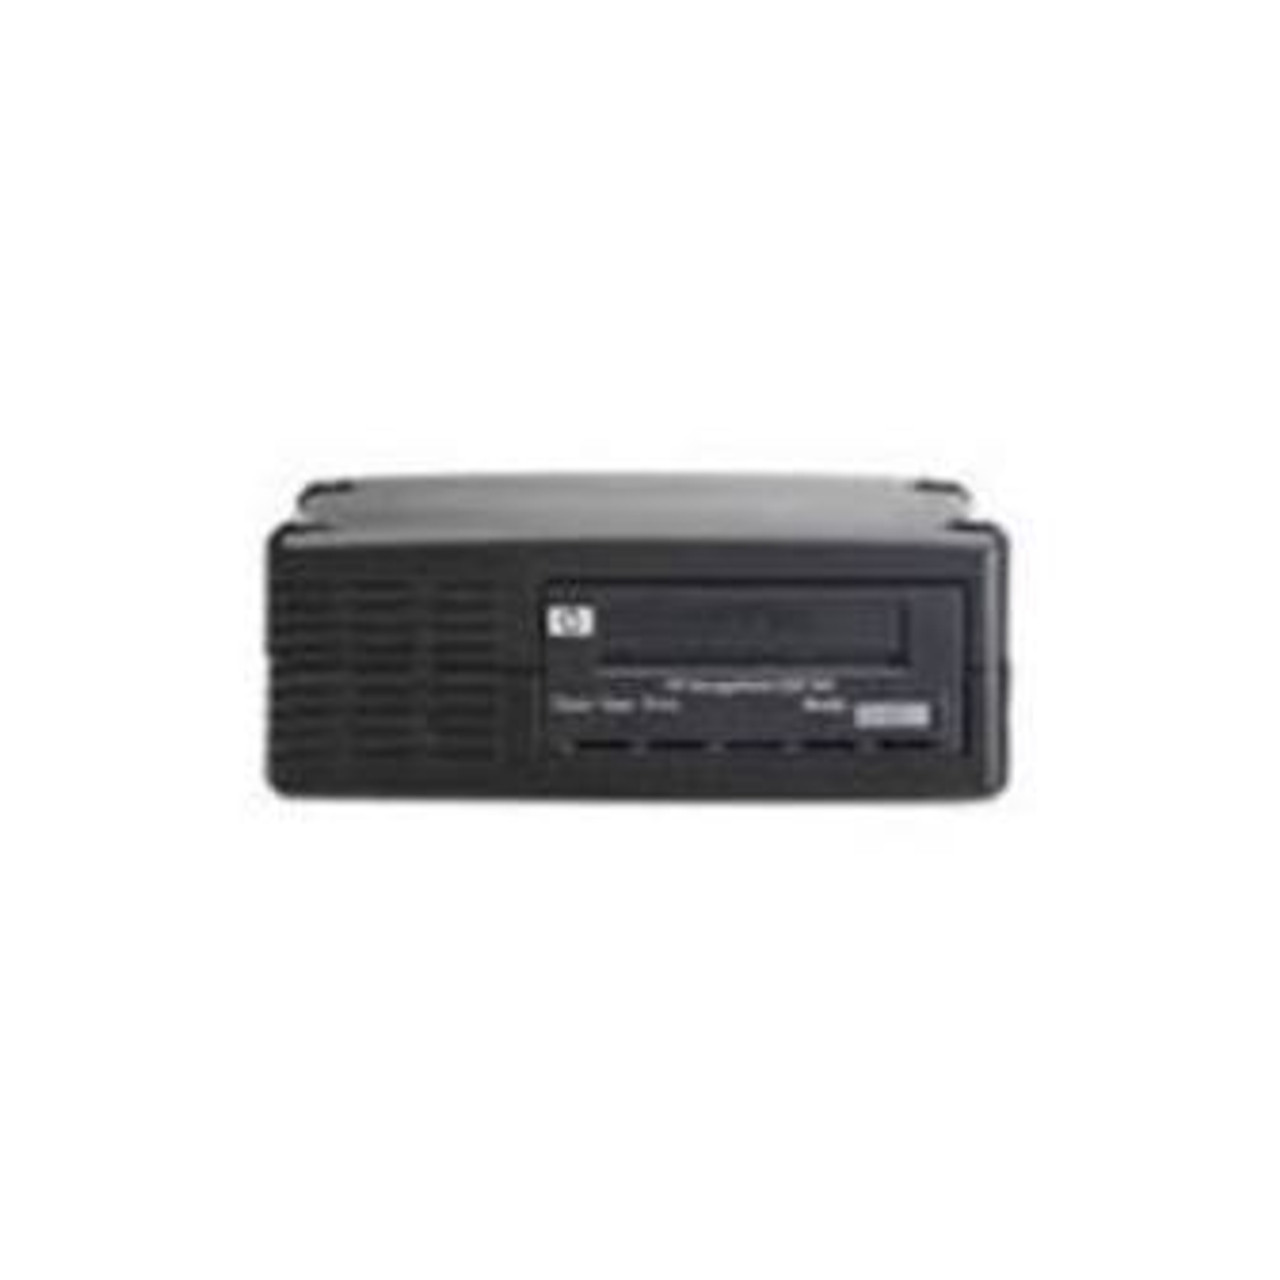 EH976A - HP DAT-160 Tape Drive 80GB (Native)/160GB (Compressed) USBInternal